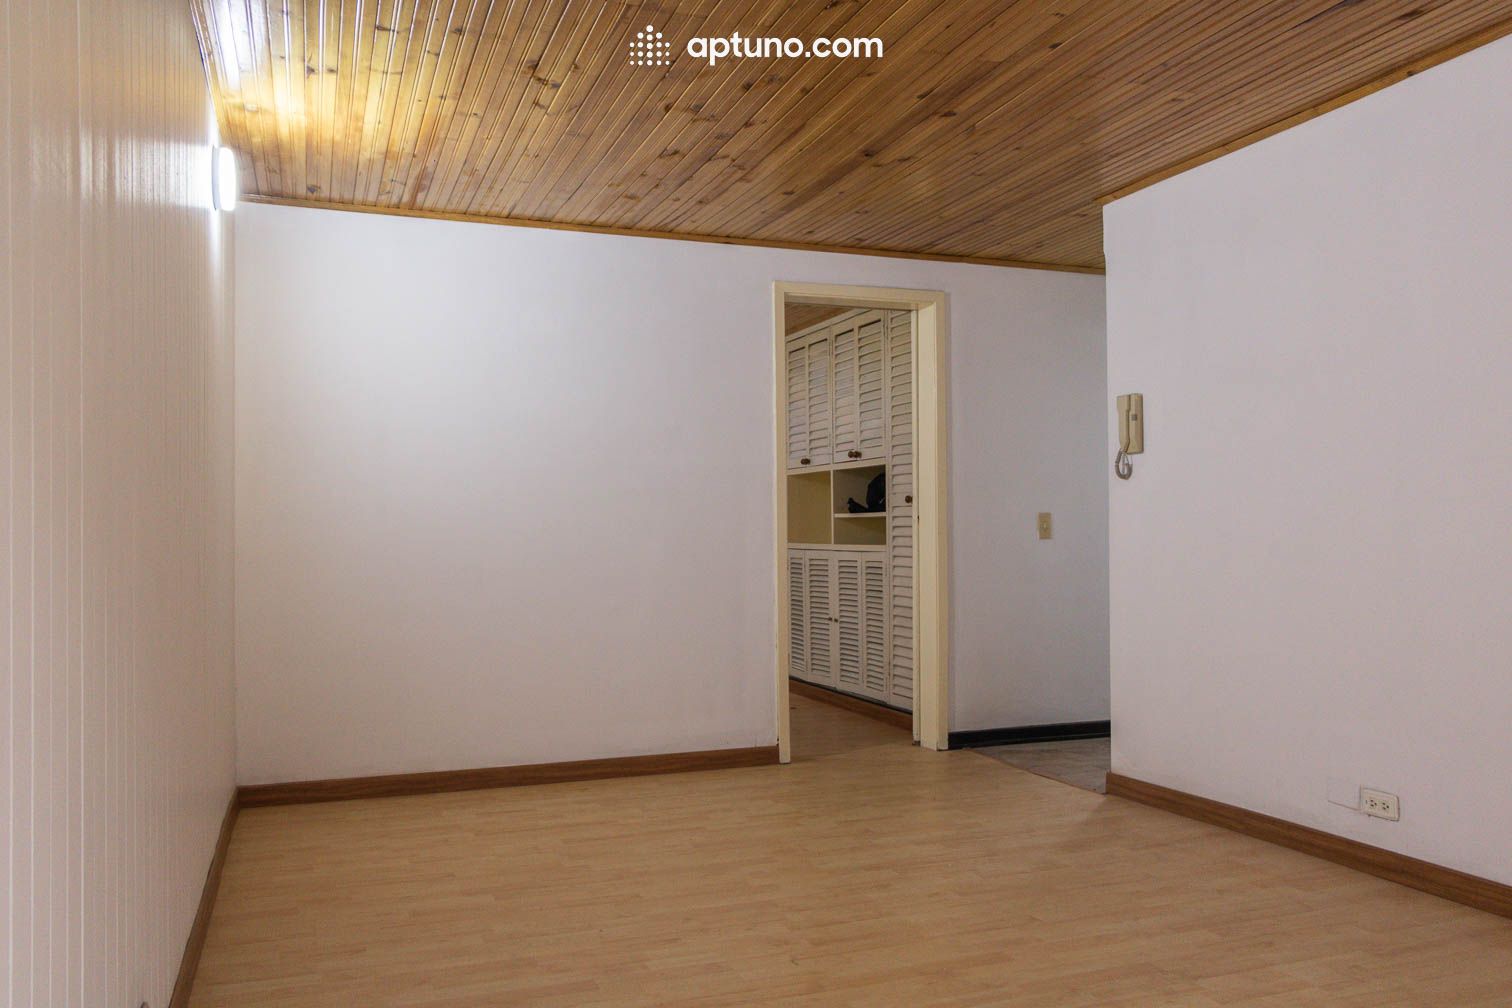 Apartamento en arriendo Cataluña 44 m² - $ 1.530.000,00